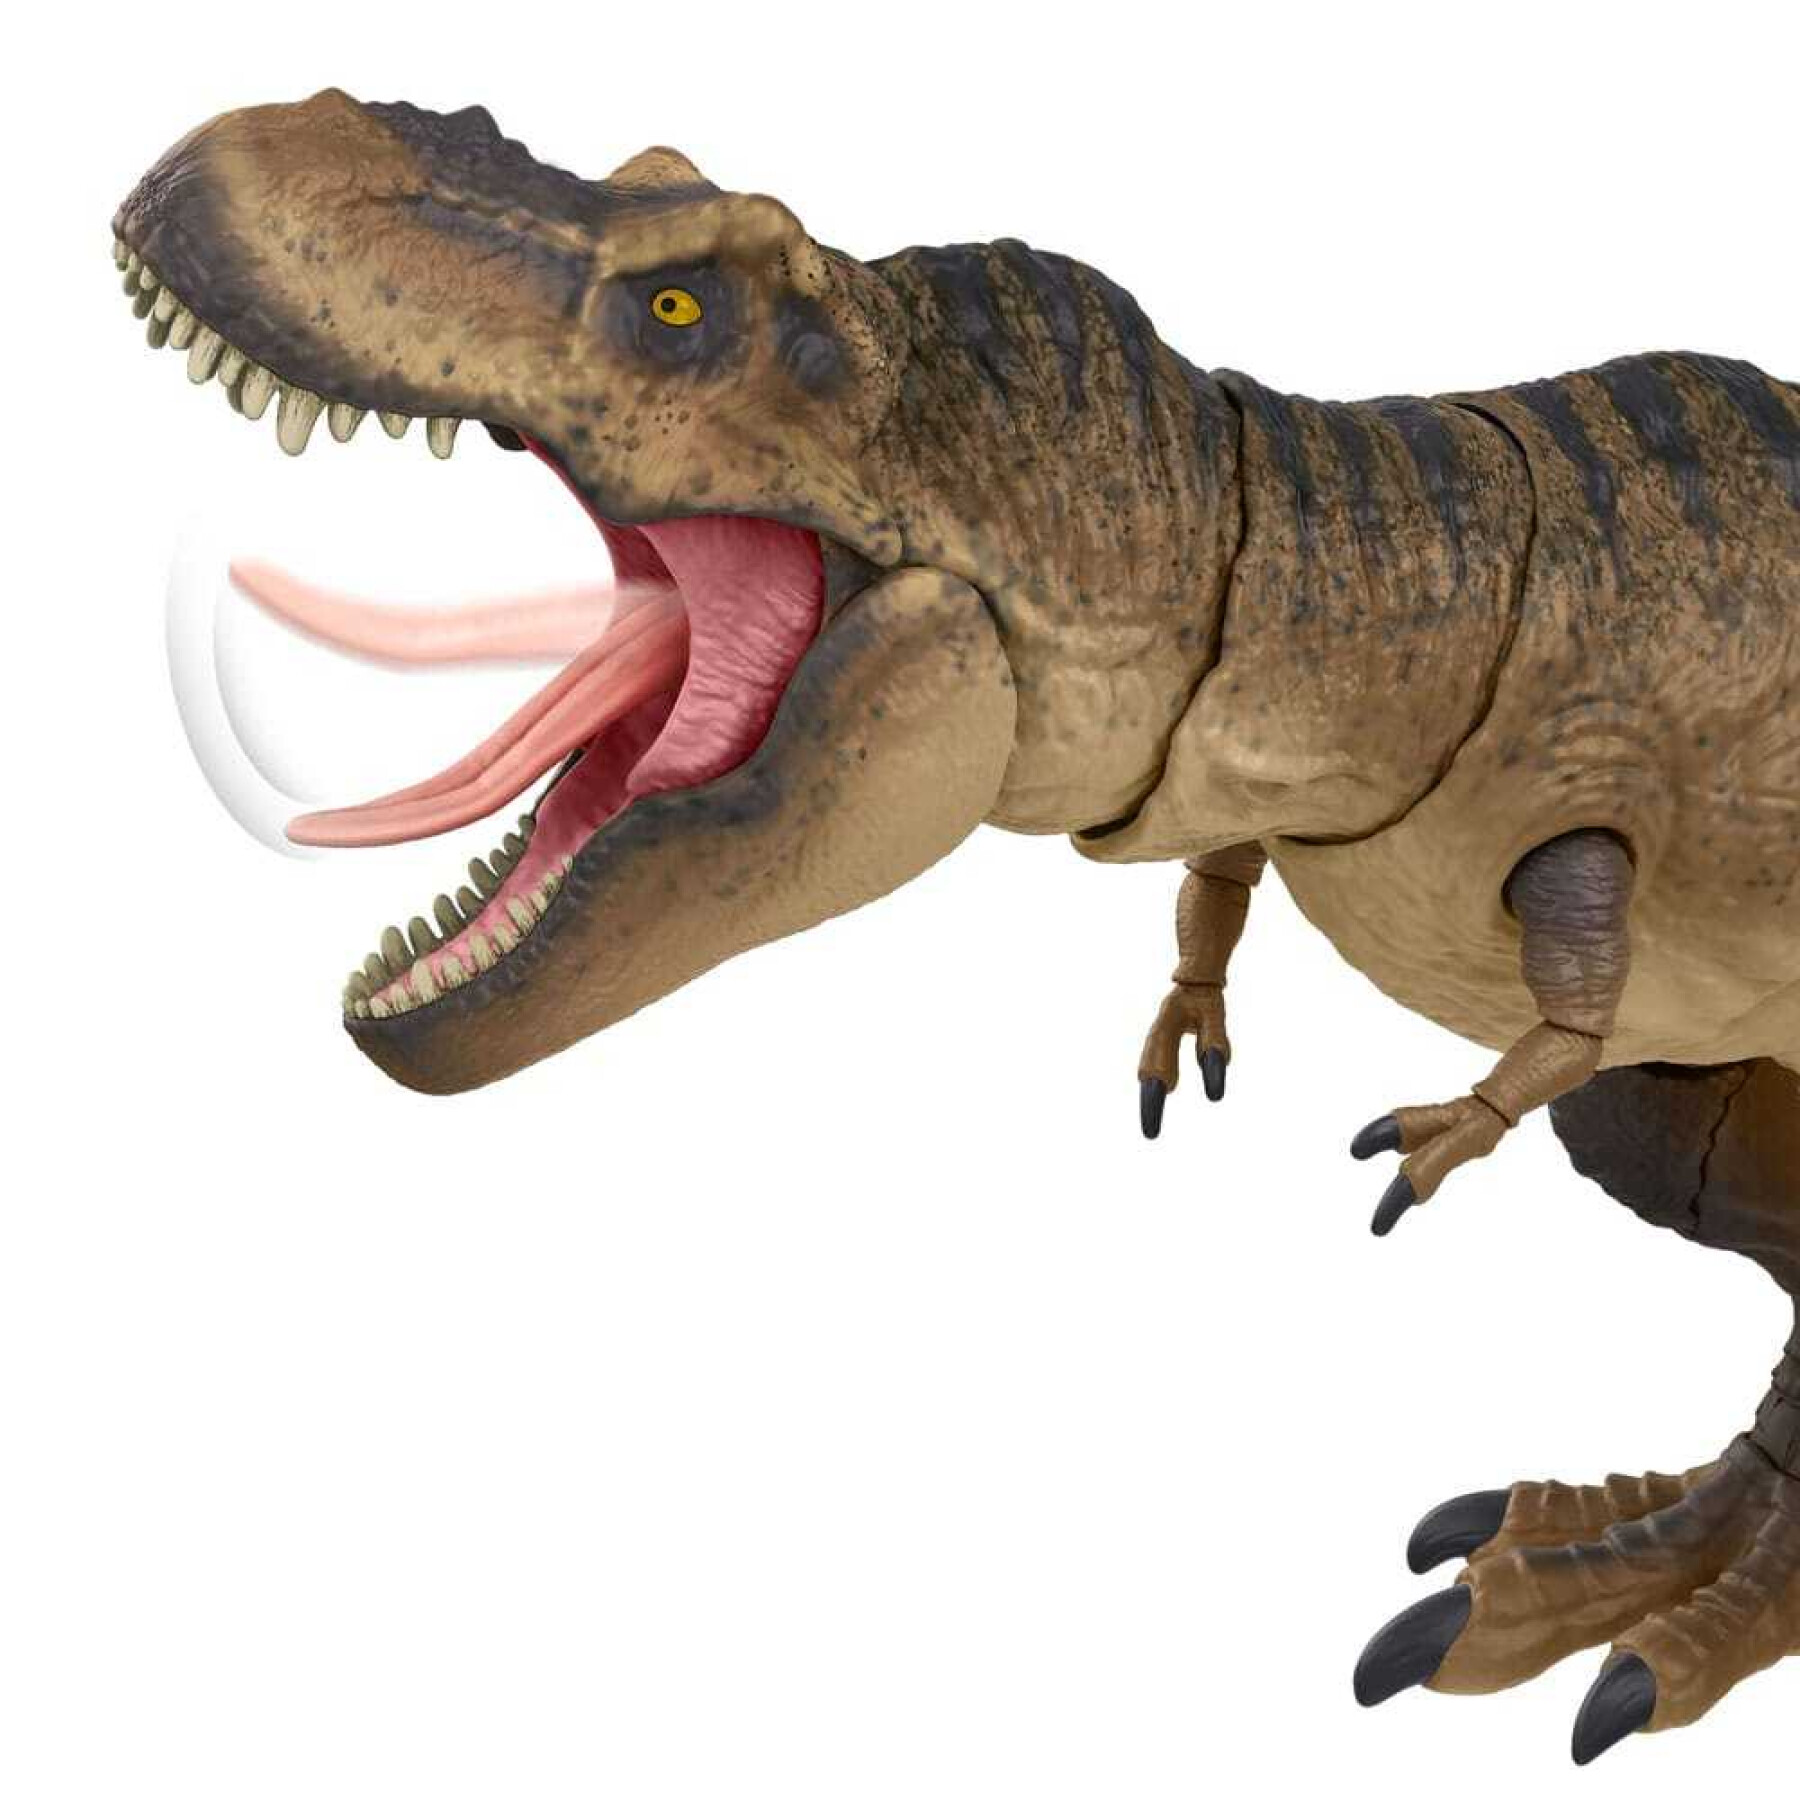 Figurina Mattel Jurassic Park Hammond Collection Tyrannosaurus Rex